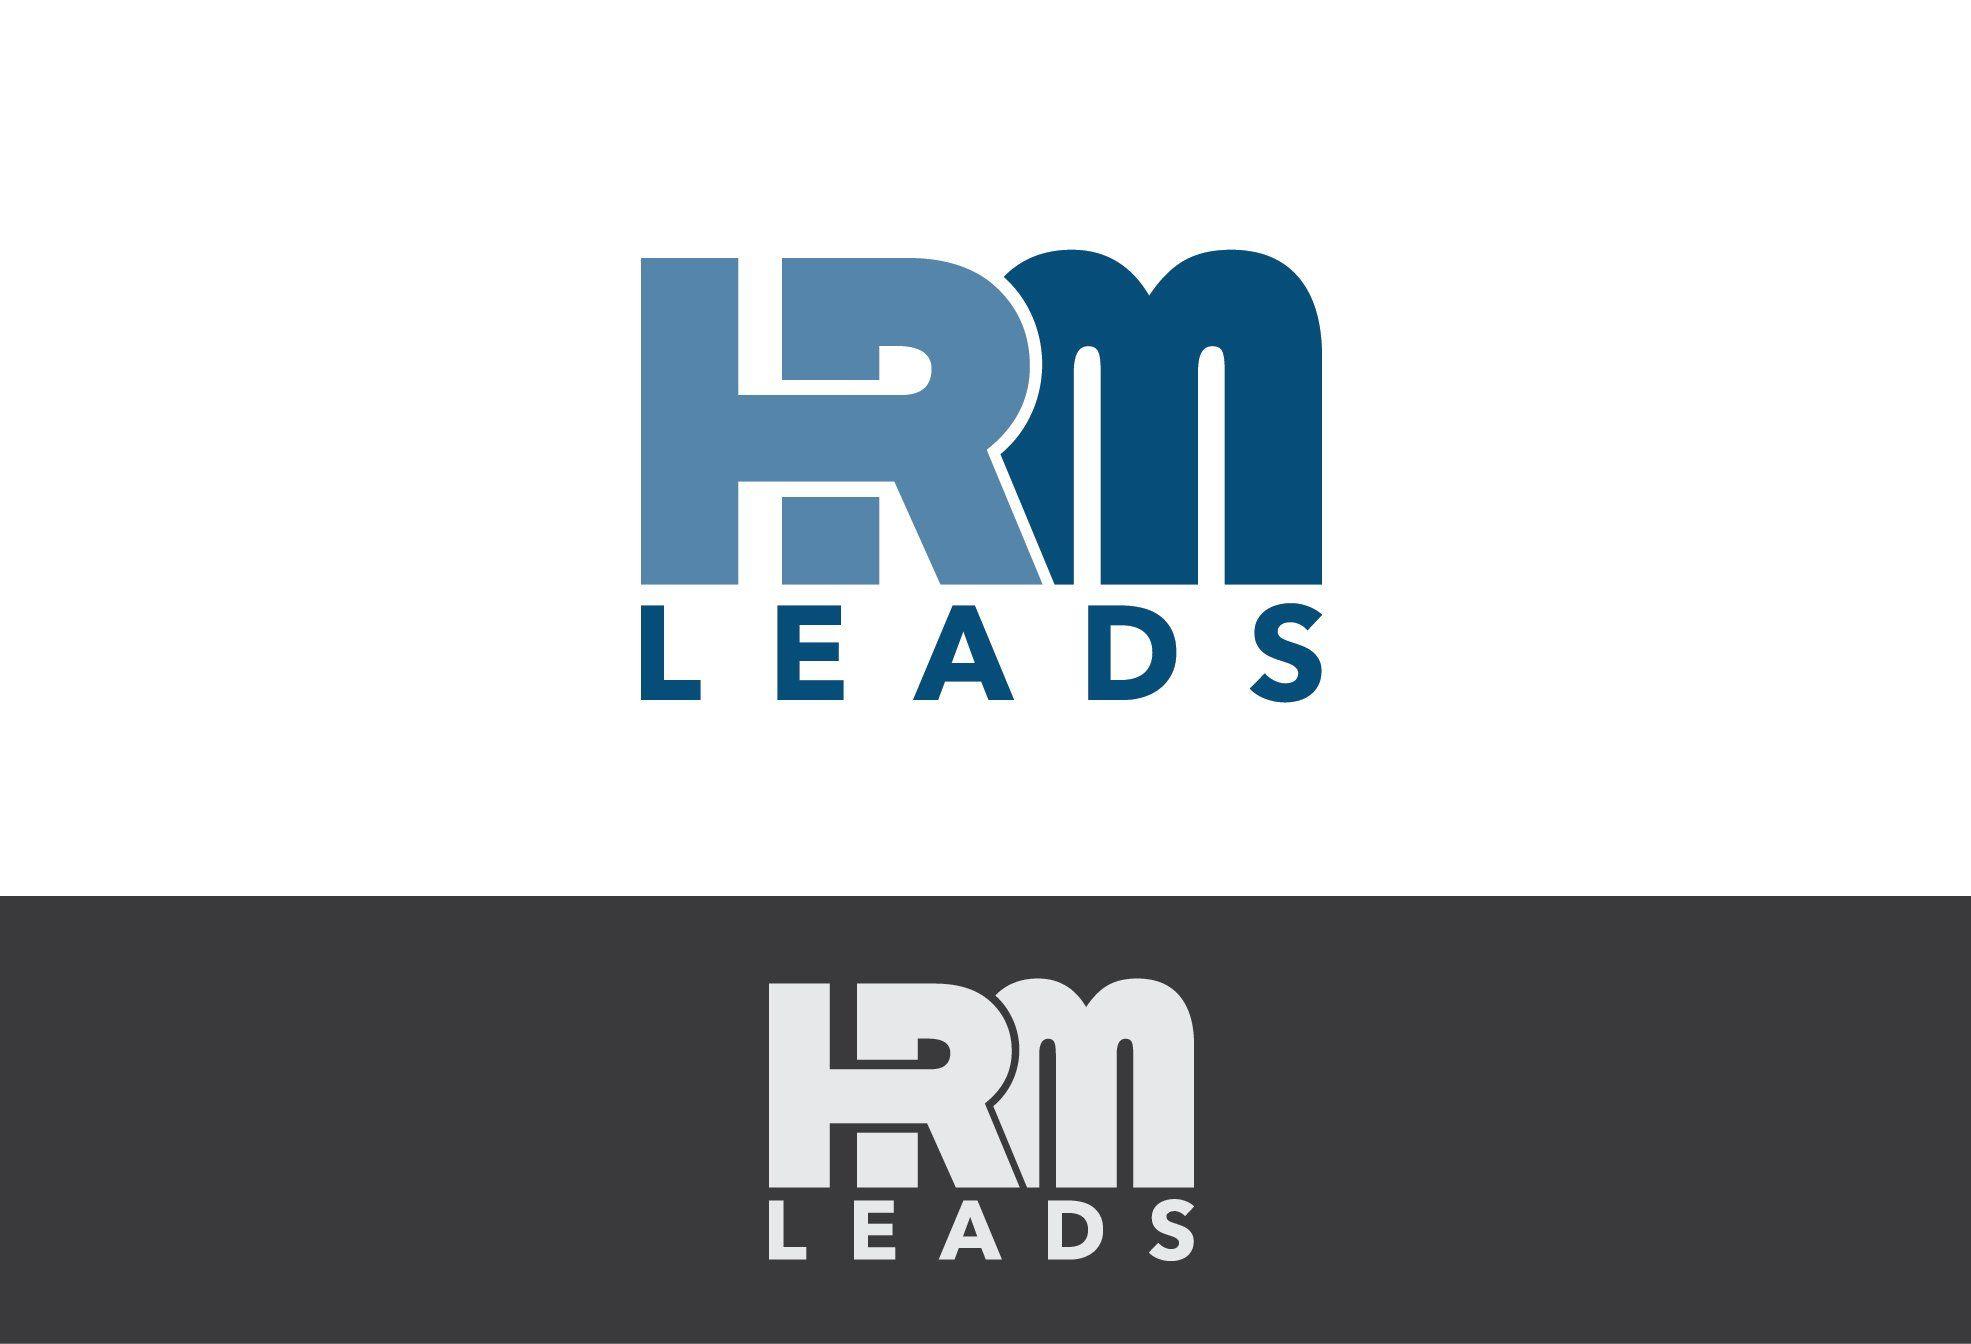 HRM Logo - Logo Design. 'hrm Leads.com' Design Project. DesignContest ®